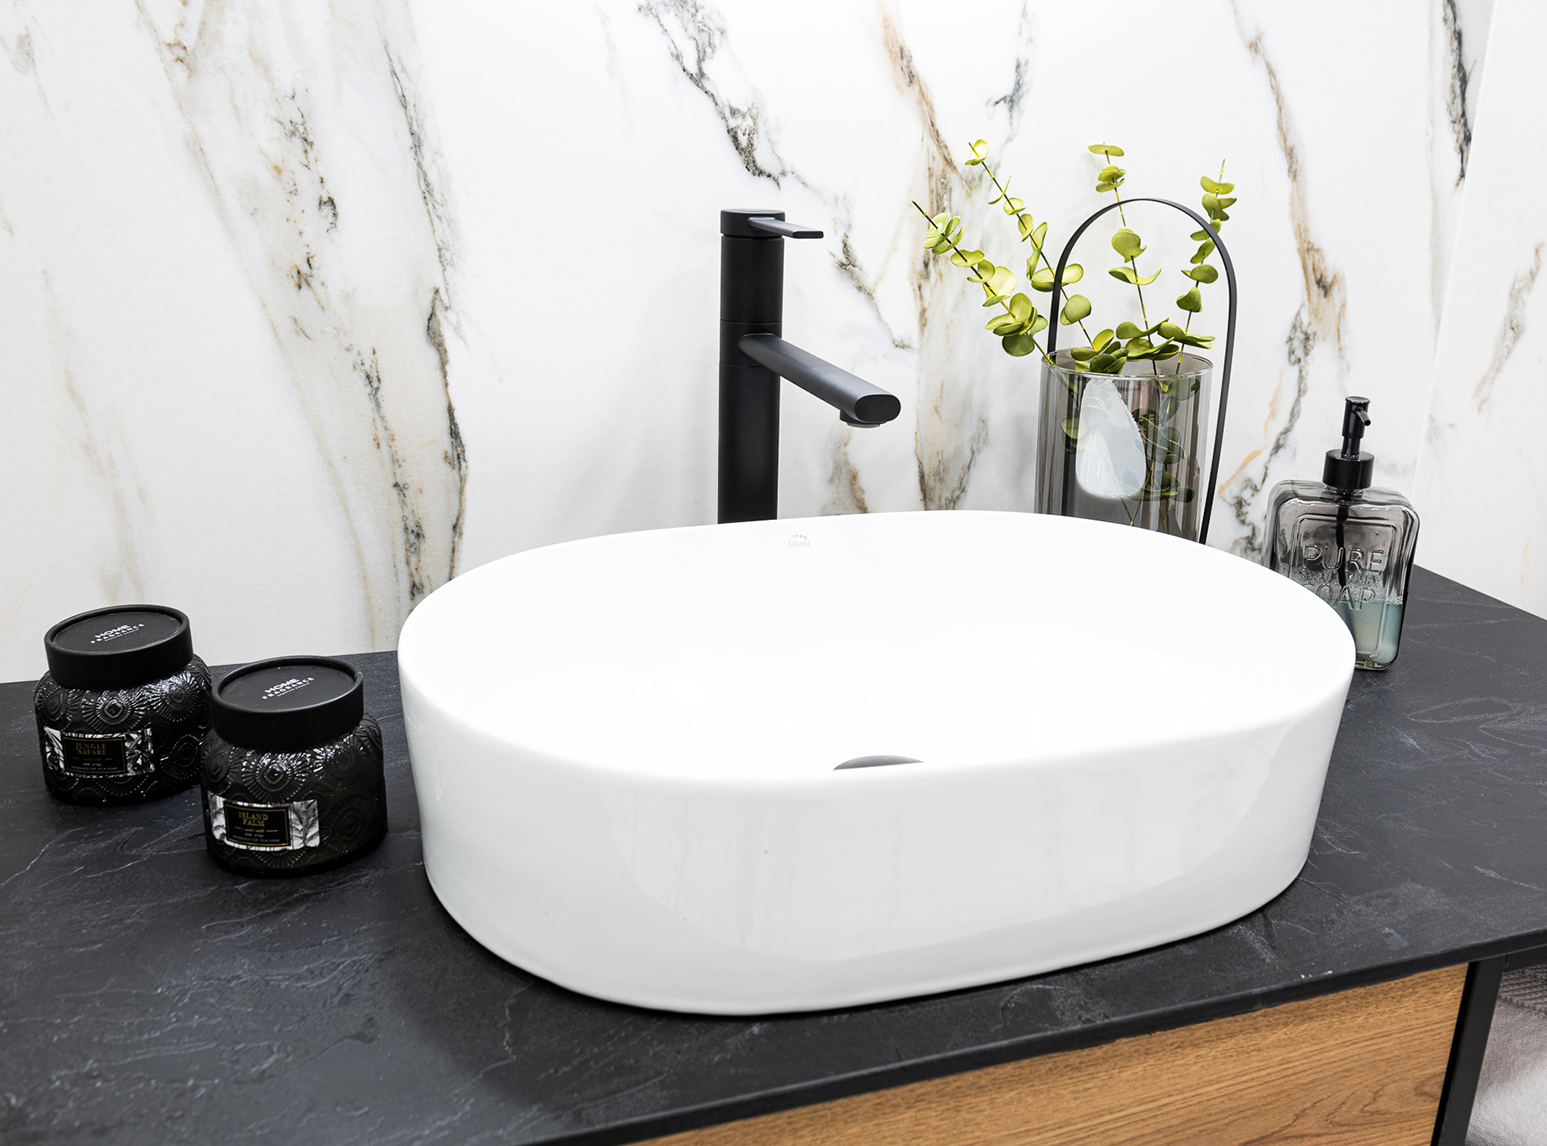 Laveo Desna ceramic washbasin countertop - -